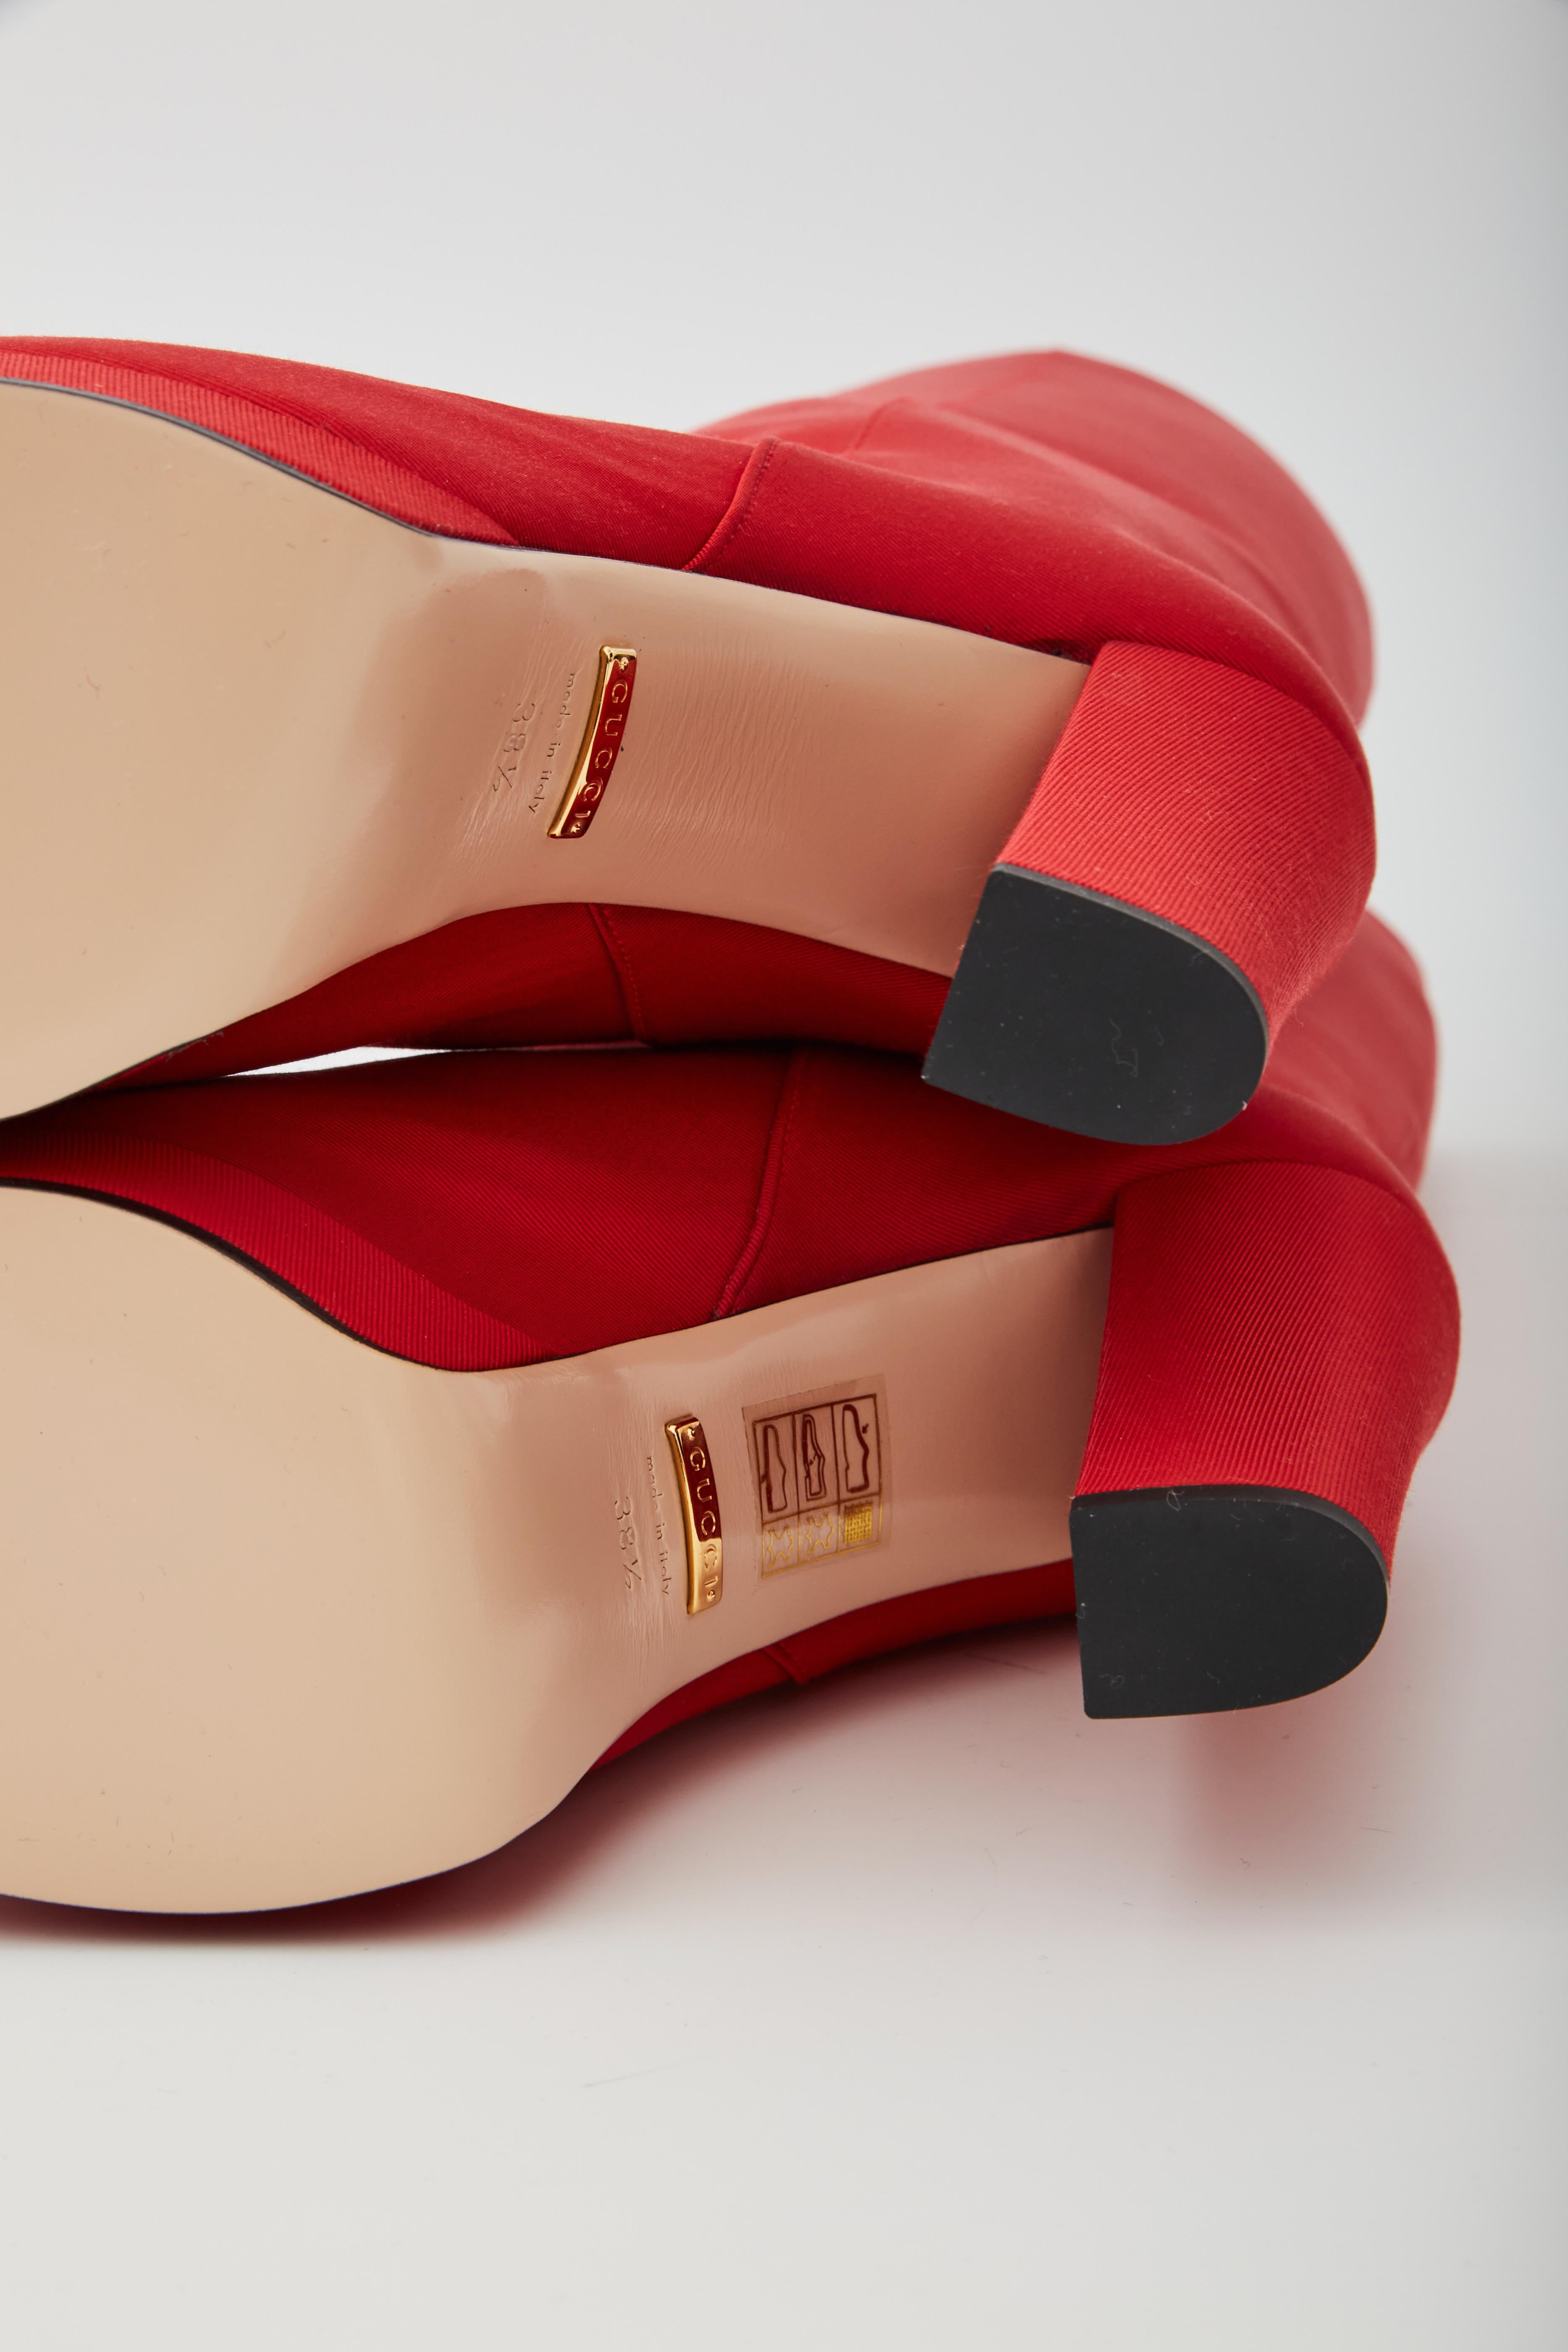 Gucci - Bottes à plateforme hauteur genou en tissu rouge côtelé (588968) 38,5 EU Unisexe en vente